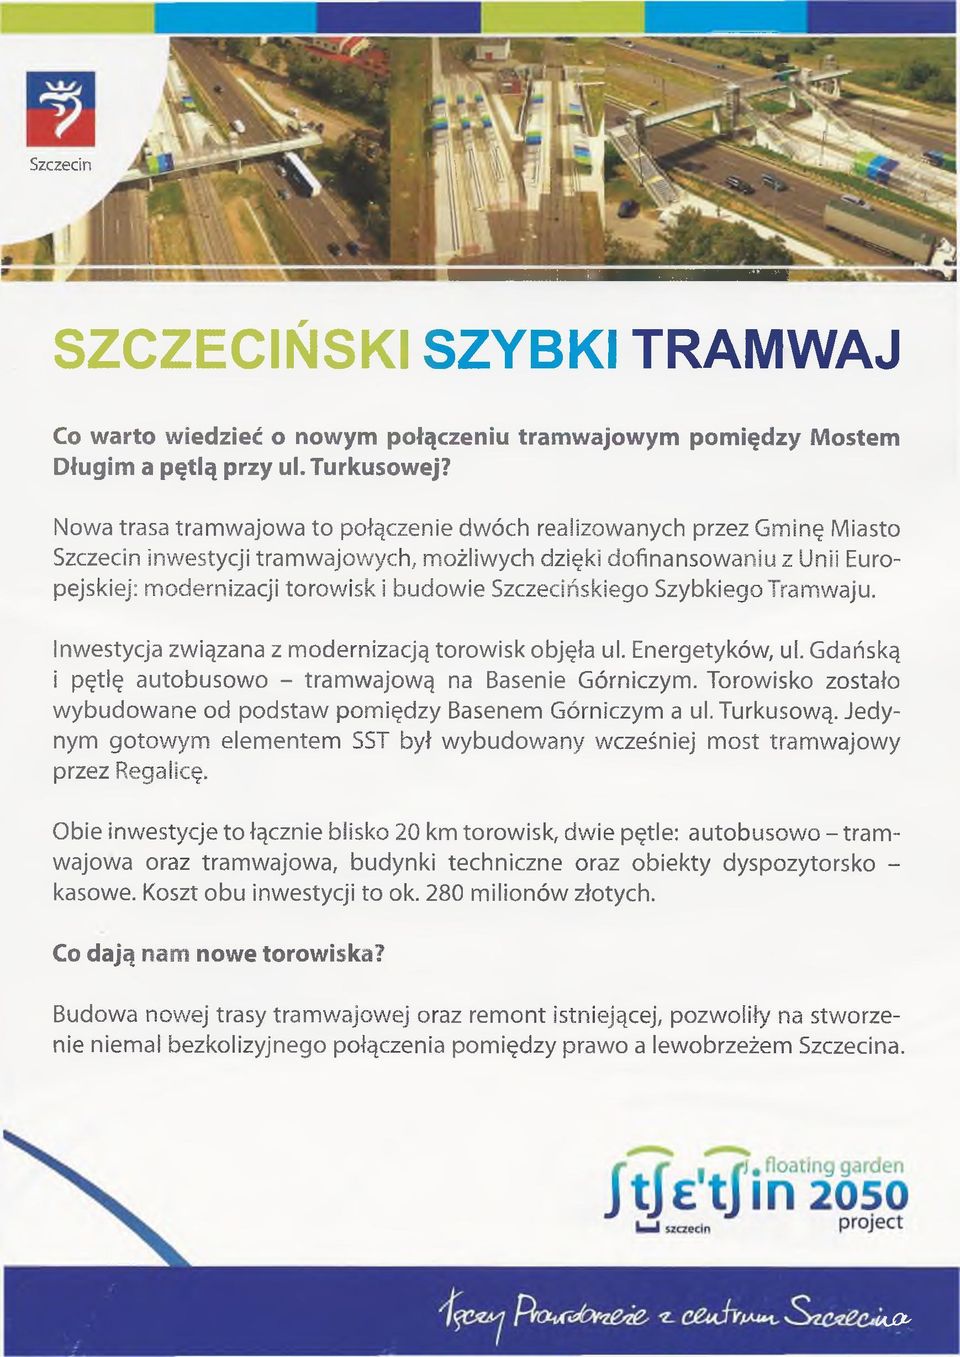 Szczecińskiego Szybkiego Tramwaju. Inwestycja związana z modernizacją torowisk objęła ul. Energetyków, ul. Gdańską i pętlę autobusowo - tramwajową na Basenie Górniczym.